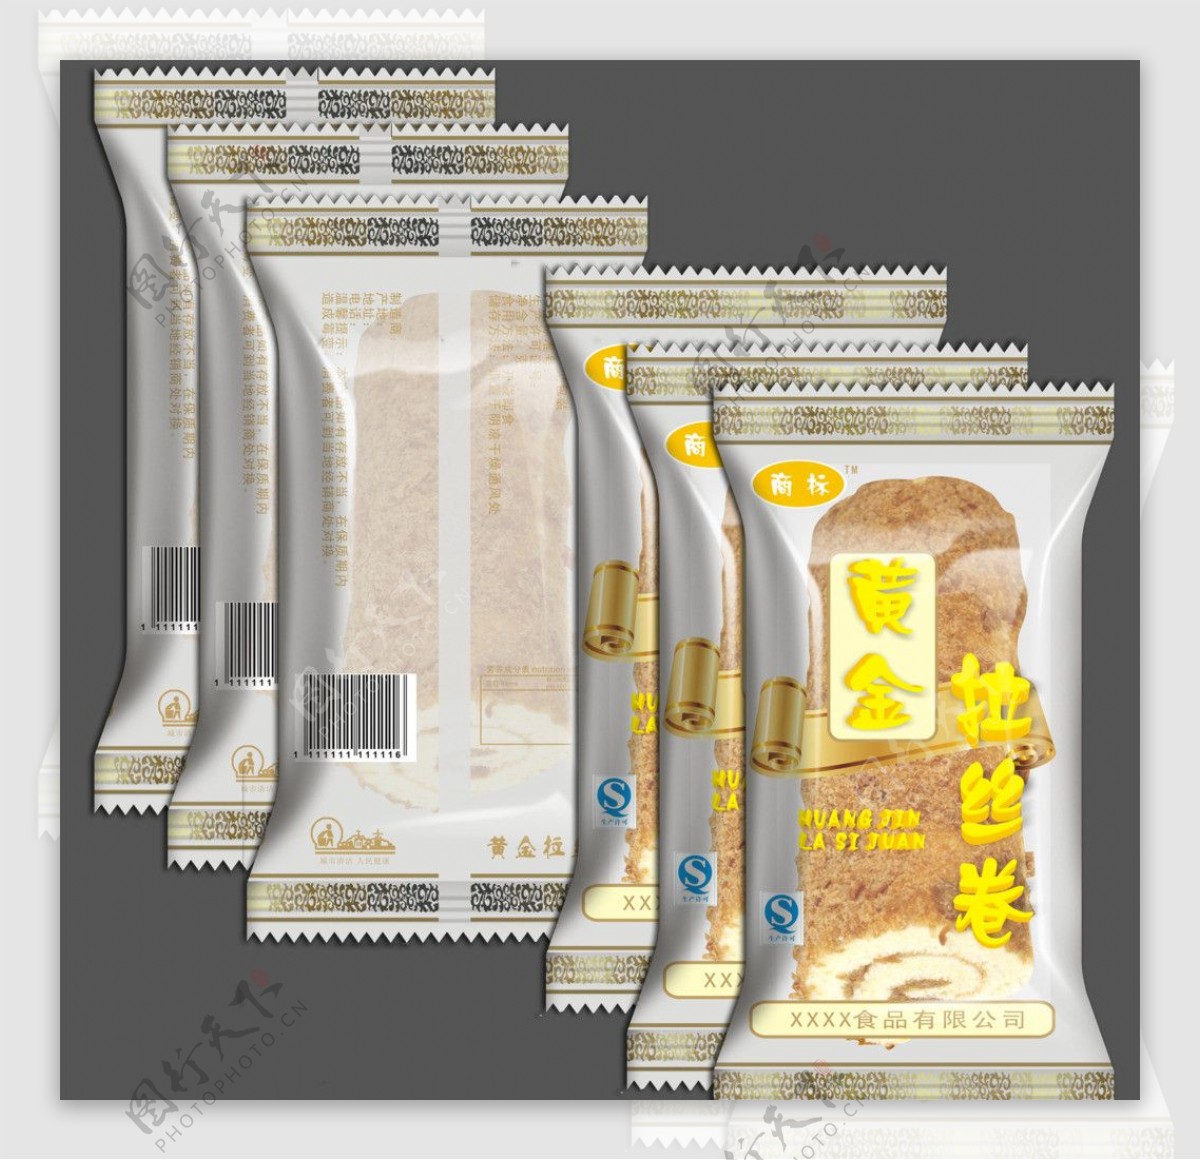 黄金拉丝卷食品包装图片